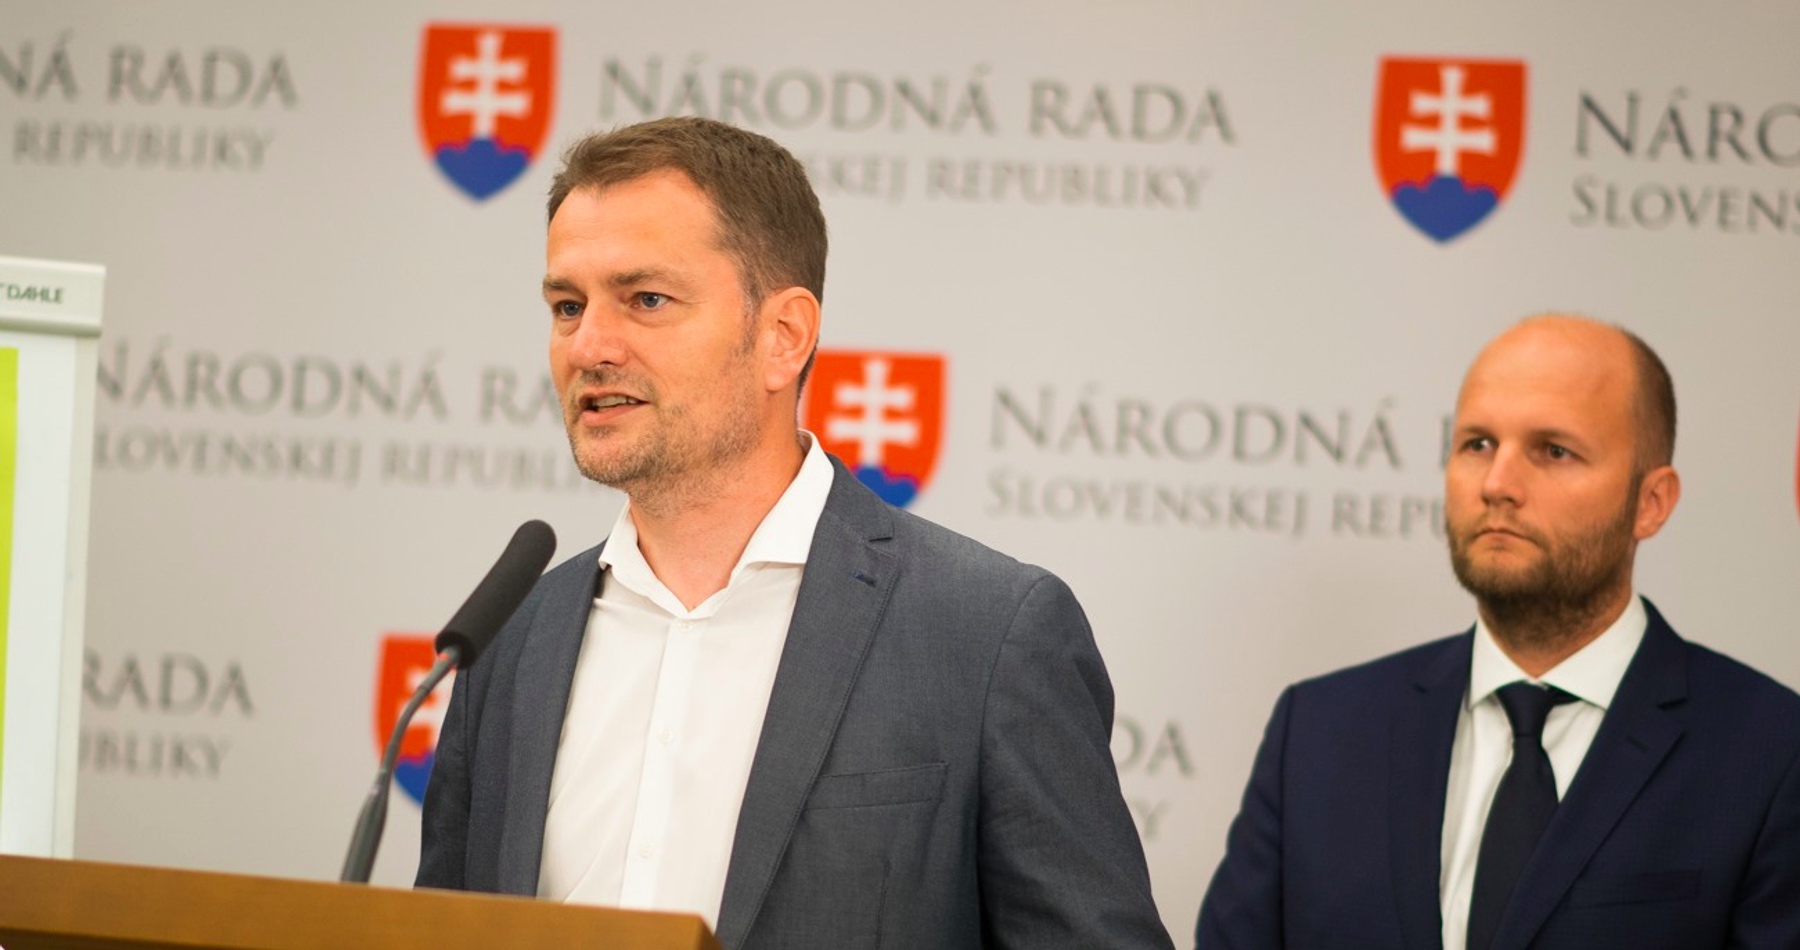 VIDEO: Nehrozí, že na Slovensku bude vybudovaná akákoľvek vojenská základňa bez toho, aby o tom rozhodli ľudia v celoštátnom referende, sľuboval pred voľbami Matovič a Naď mu prikyvoval